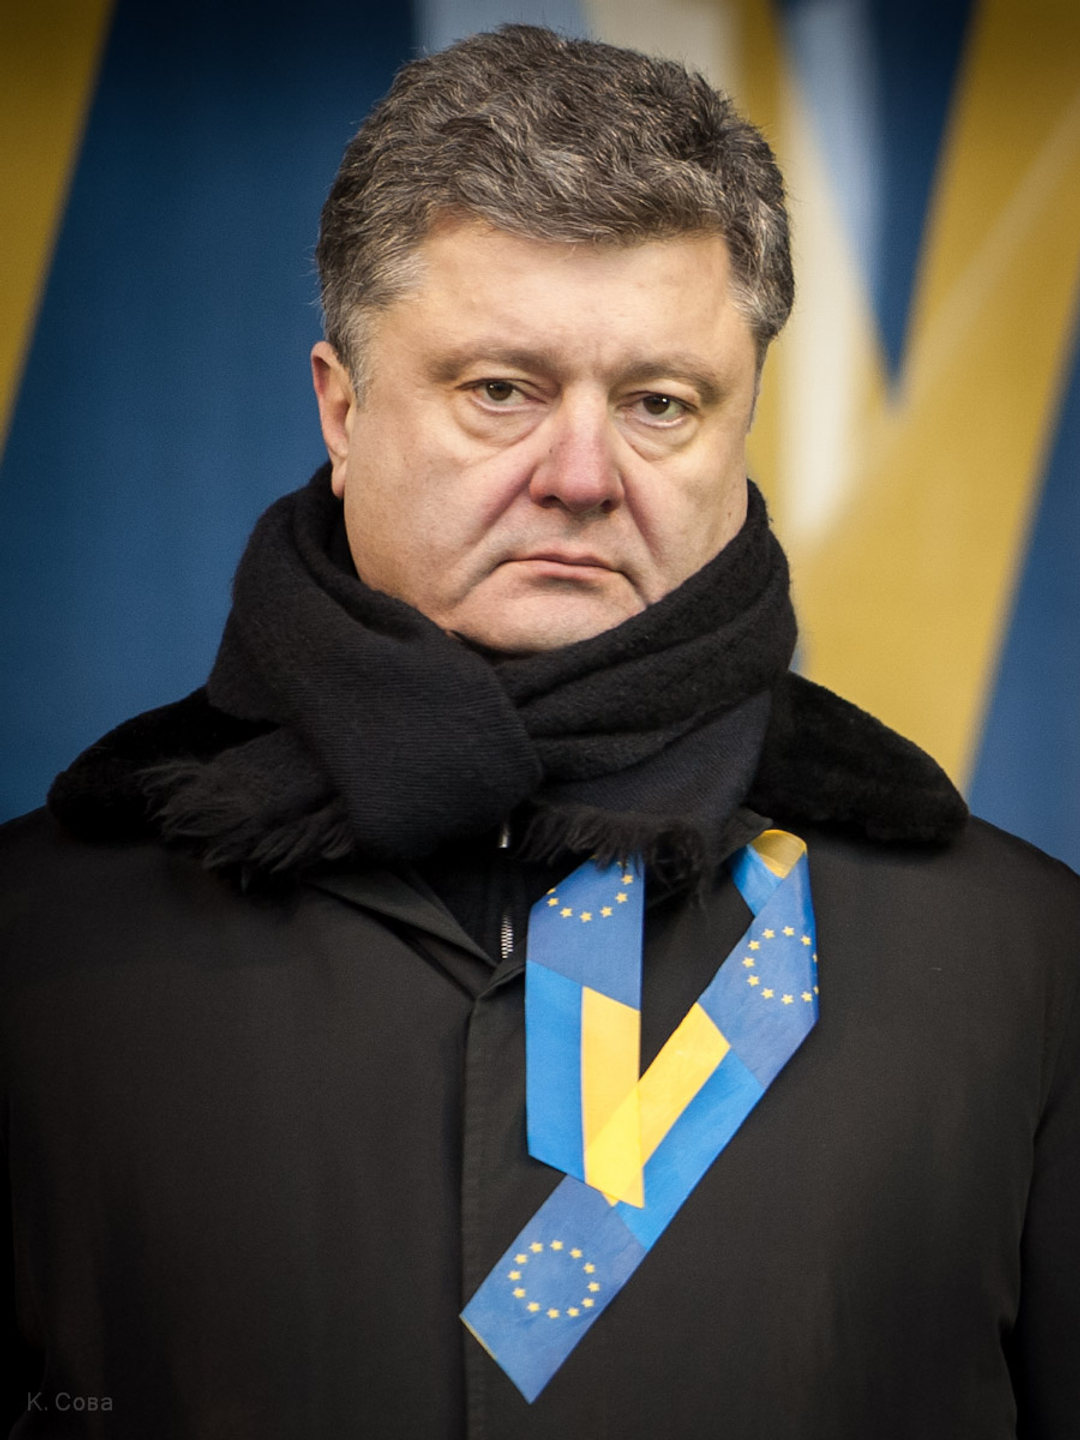 Petro Poroshenko young pics